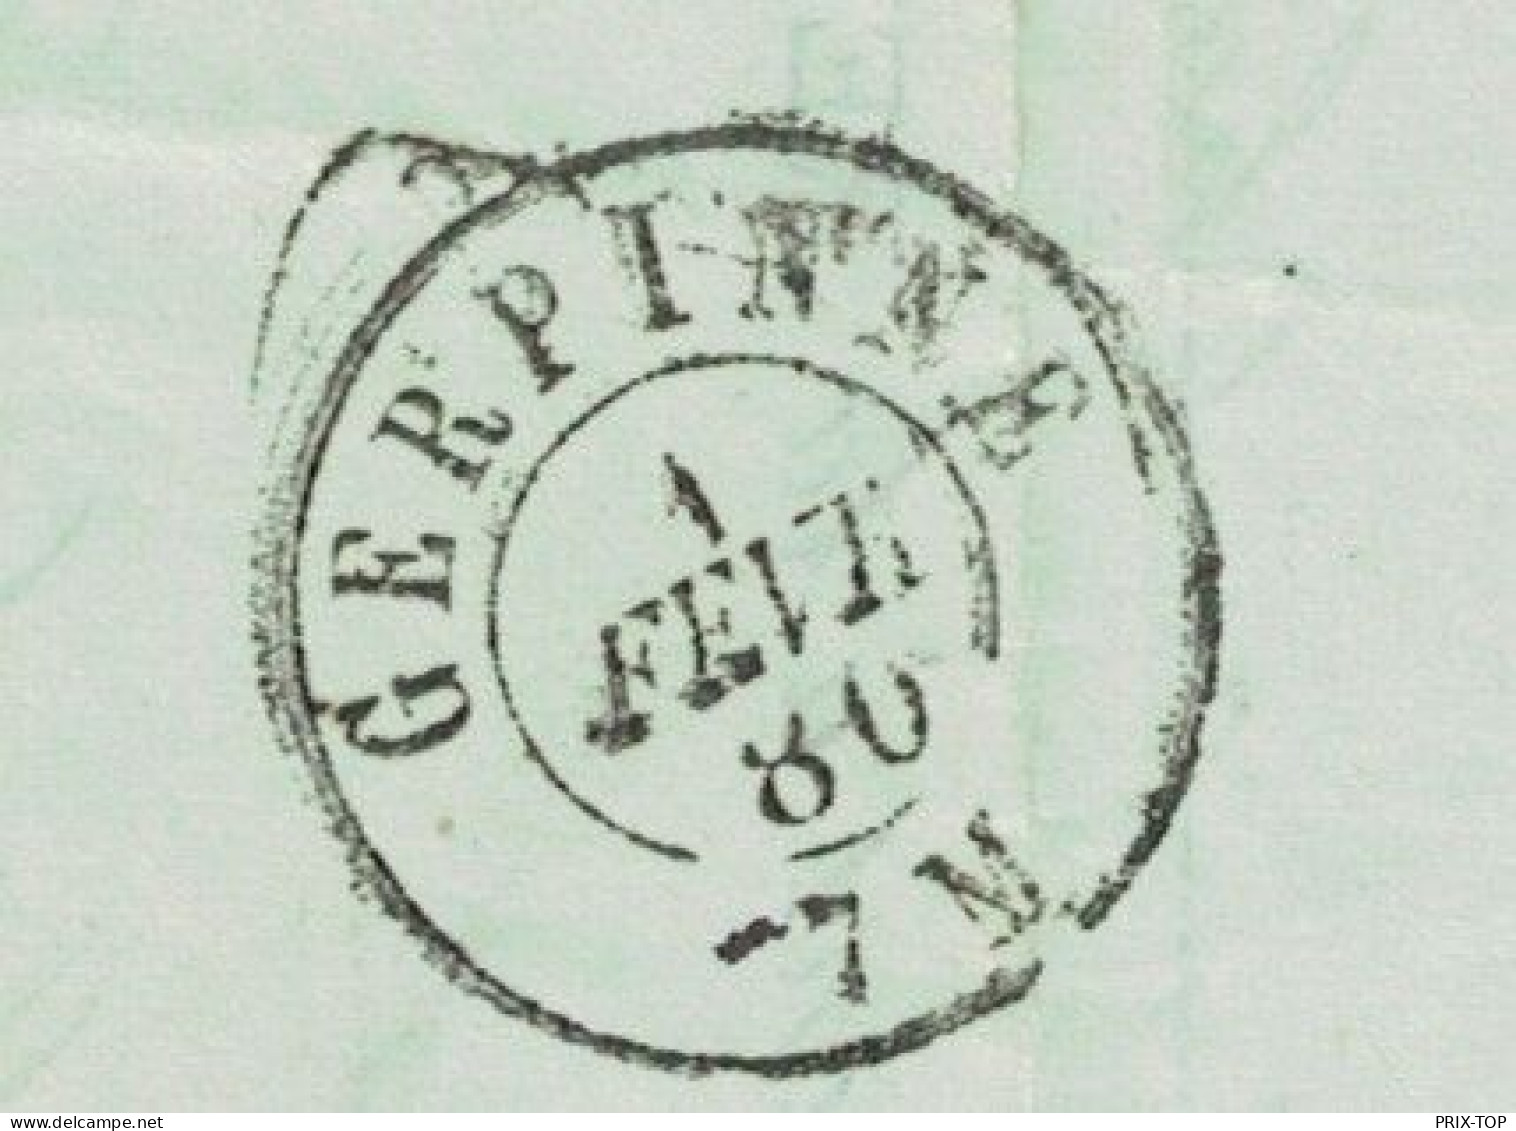 TP 30 S//Reçu De 12,00 Frs établi à BXL Dépôt BXL (LUX) 31/1/1880 > Encaissement à Gerpinnes Obl. 1/2/1880 - Landelijks Post